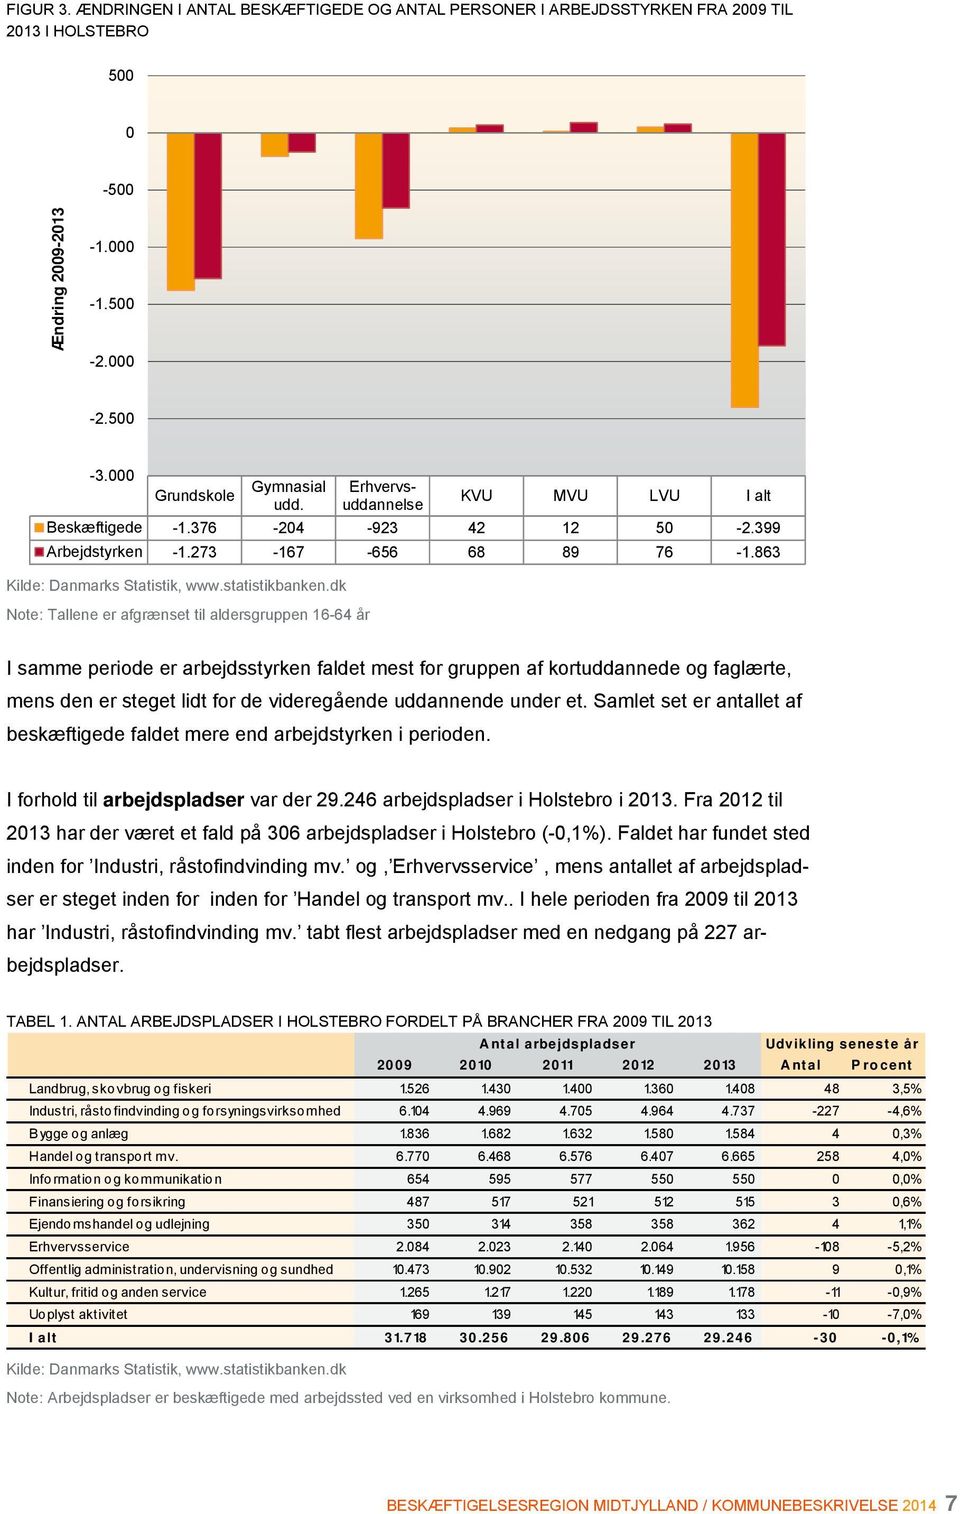 Fra 2012 til 2013 har der været et fald på 306 arbejdspladser i Holstebro (-0,1%). Faldet har fundet sted inden for Industri, råstofindvinding mv.